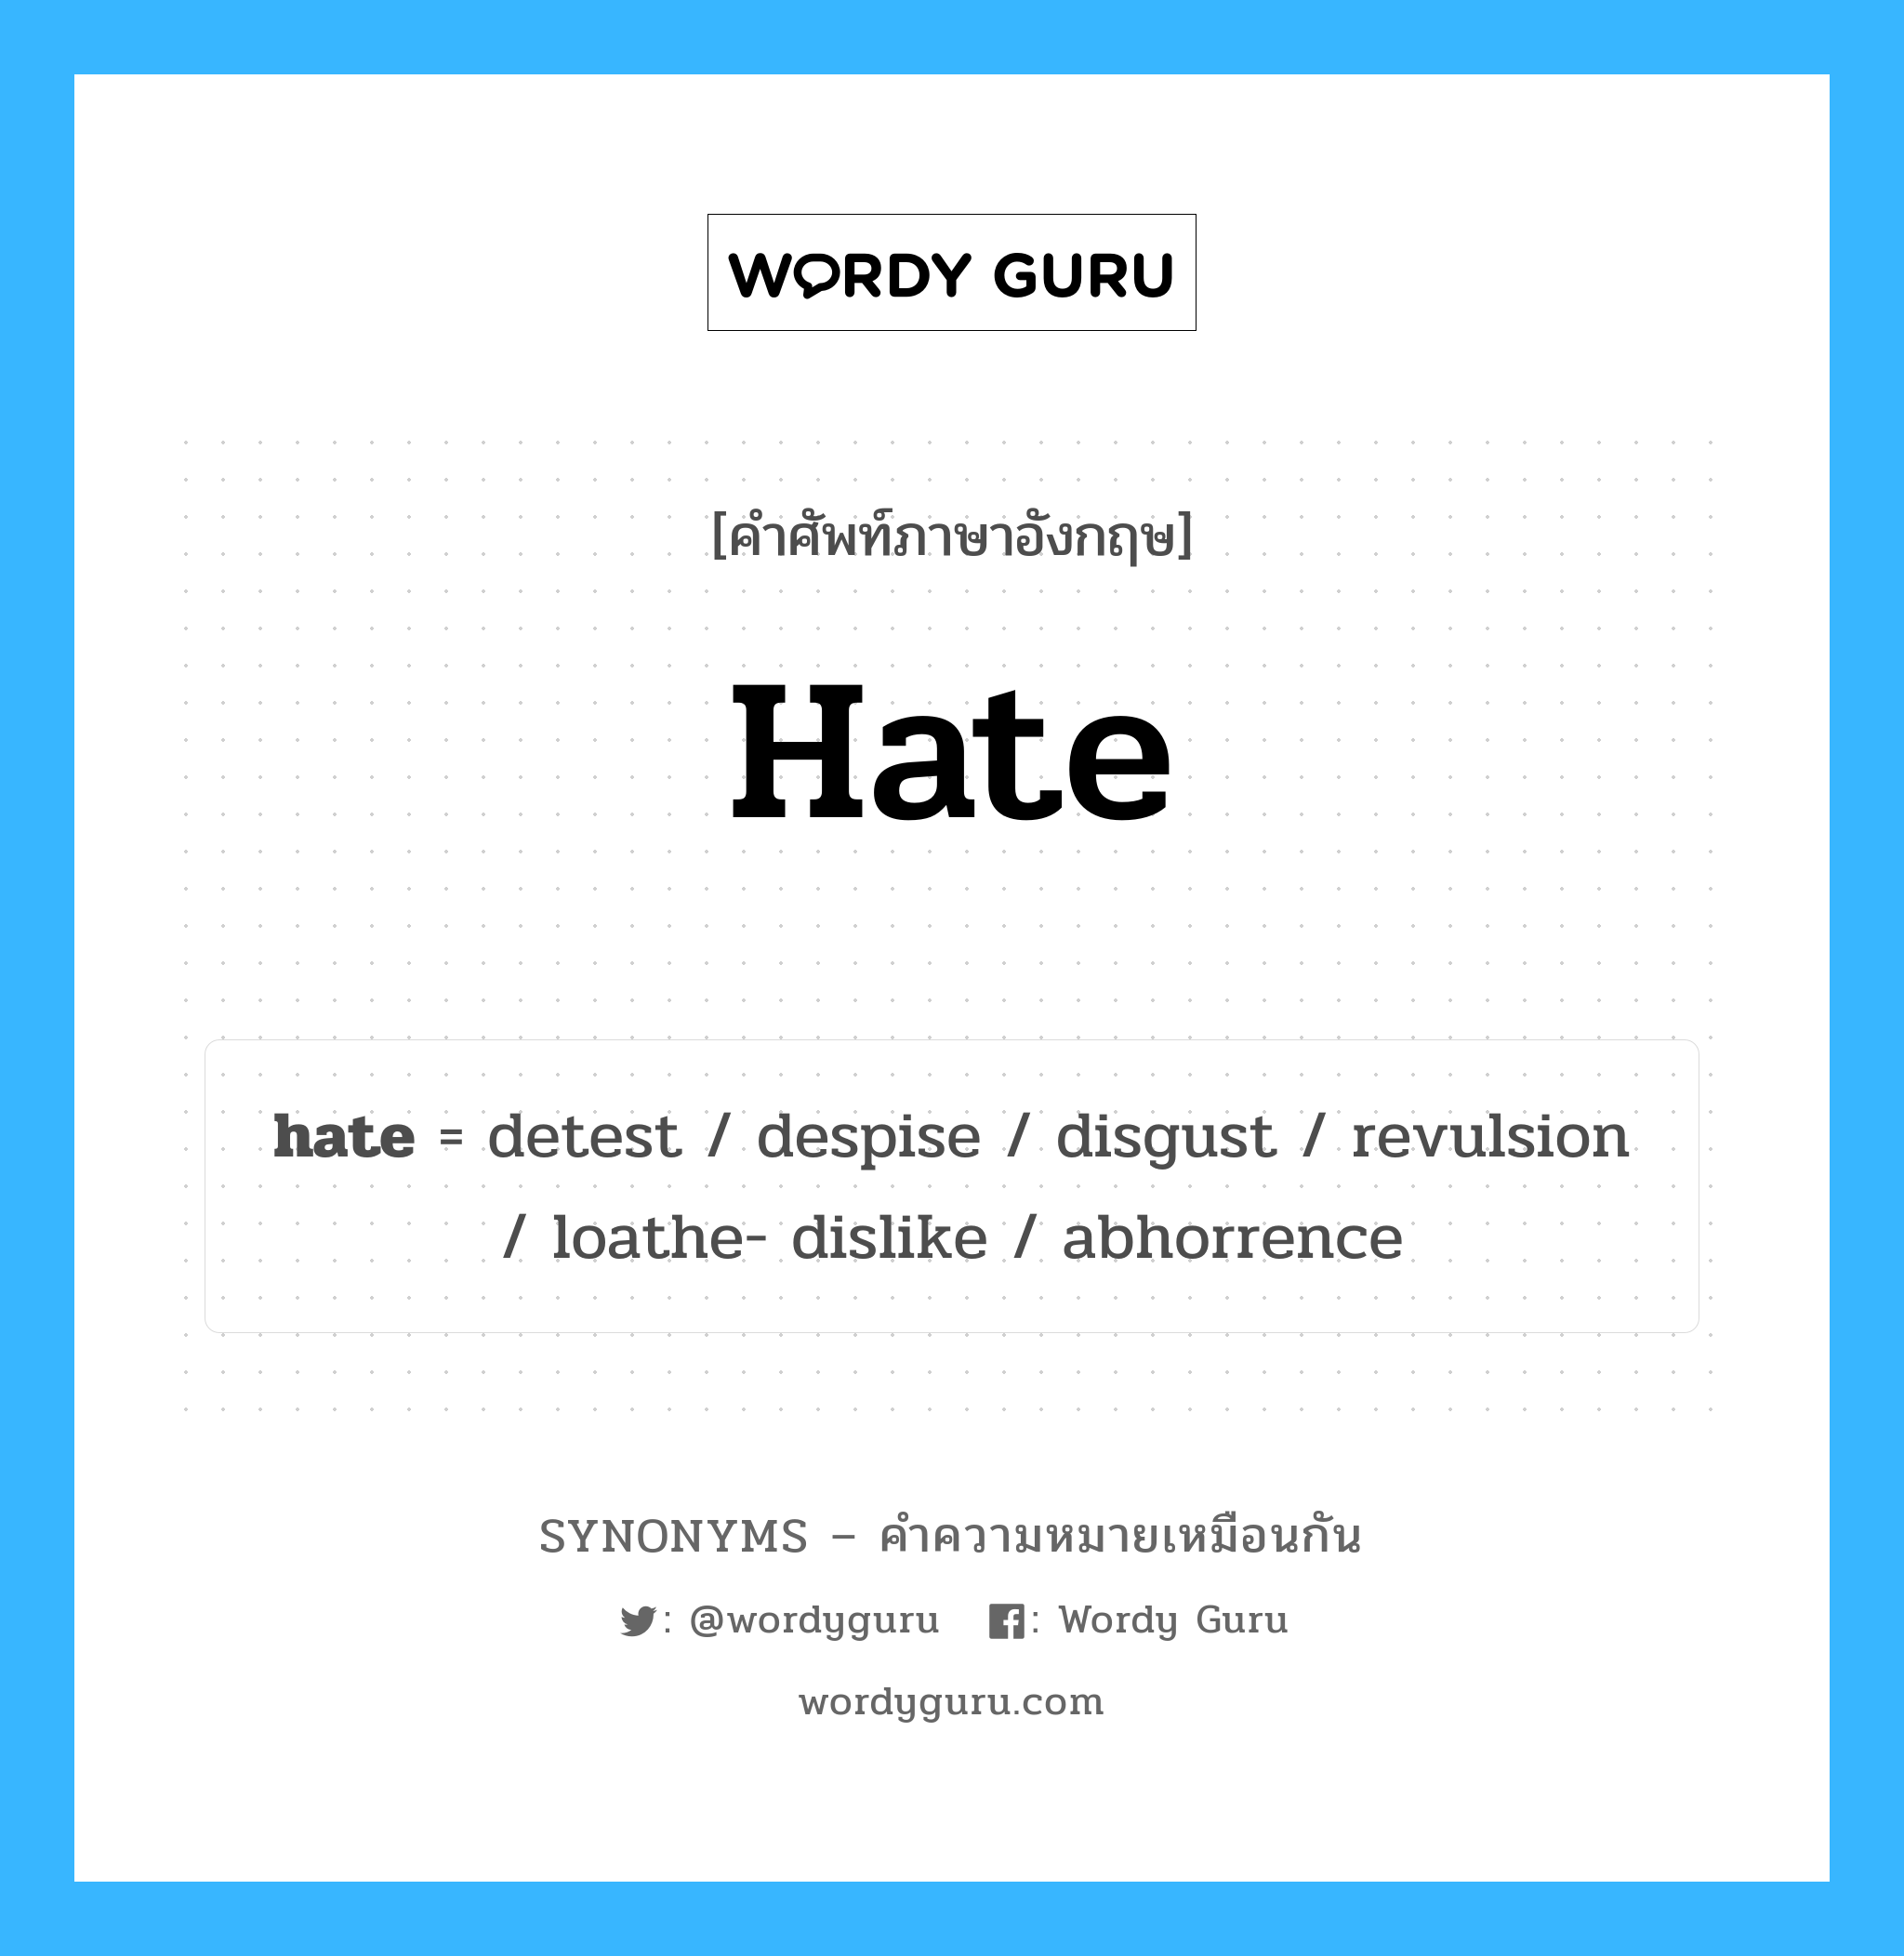 disgust เป็นหนึ่งใน hate และมีคำอื่น ๆ อีกดังนี้, คำศัพท์ภาษาอังกฤษ disgust ความหมายคล้ายกันกับ hate แปลว่า รังเกียจ หมวด hate